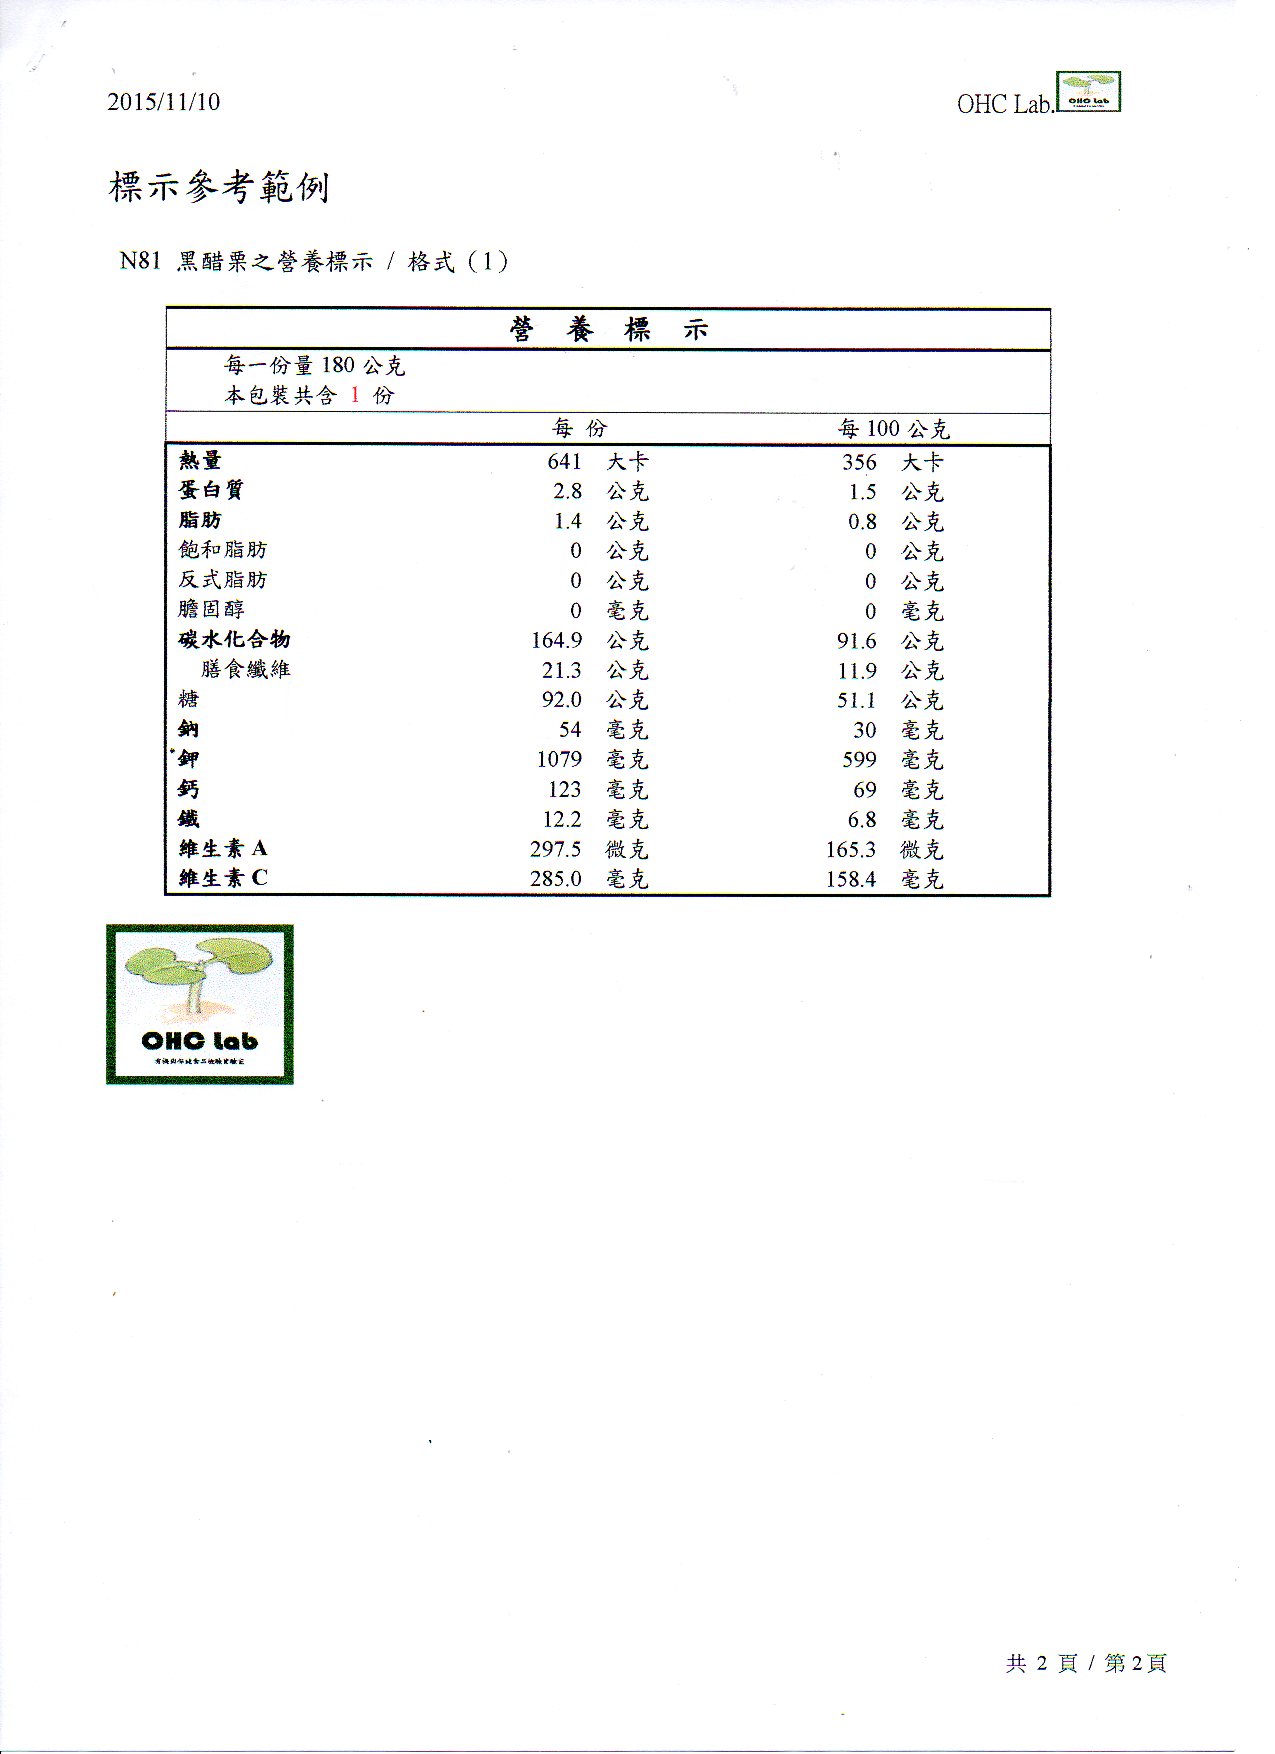 20151110-嘉藥-赤崁糖-N81黑醋栗-營養成分-2.jpg